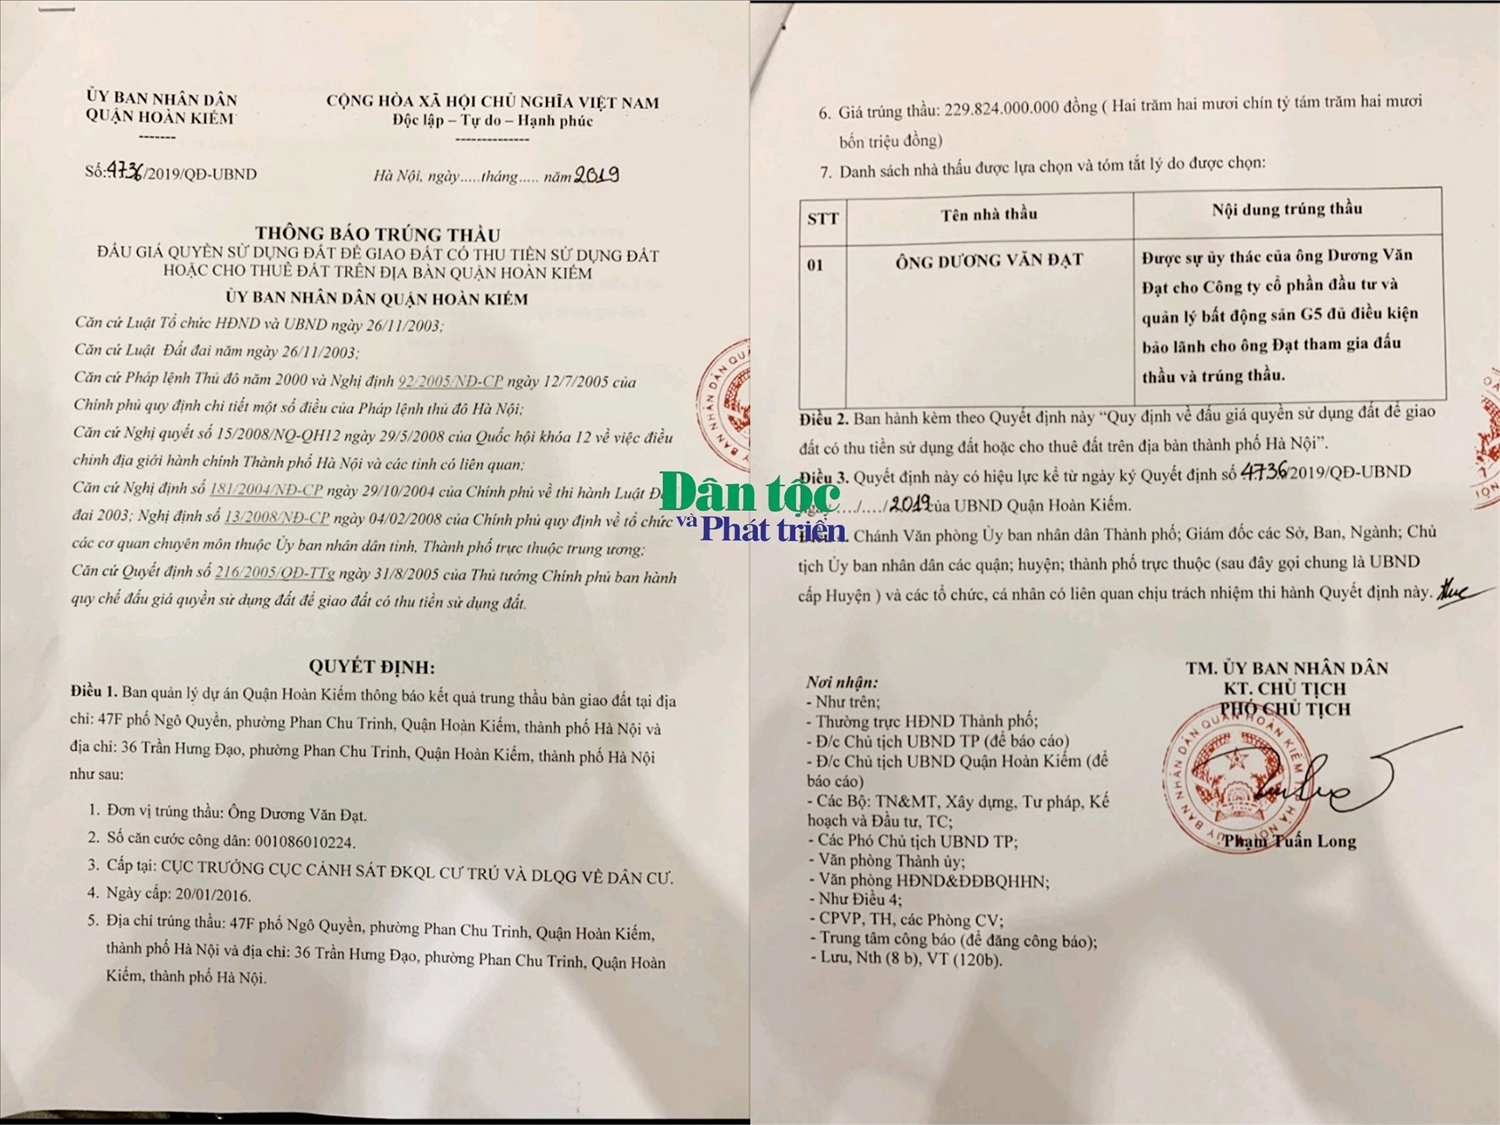 Thông báo trúng thầu số: 4736/2019/QĐ-UBND năm 2019, có ký tên là Phạm Tuấn Long - Phó chủ tịch UBND quận Hoàn Kiếm và đóng dấu UBND quận Hoàn Kiếm